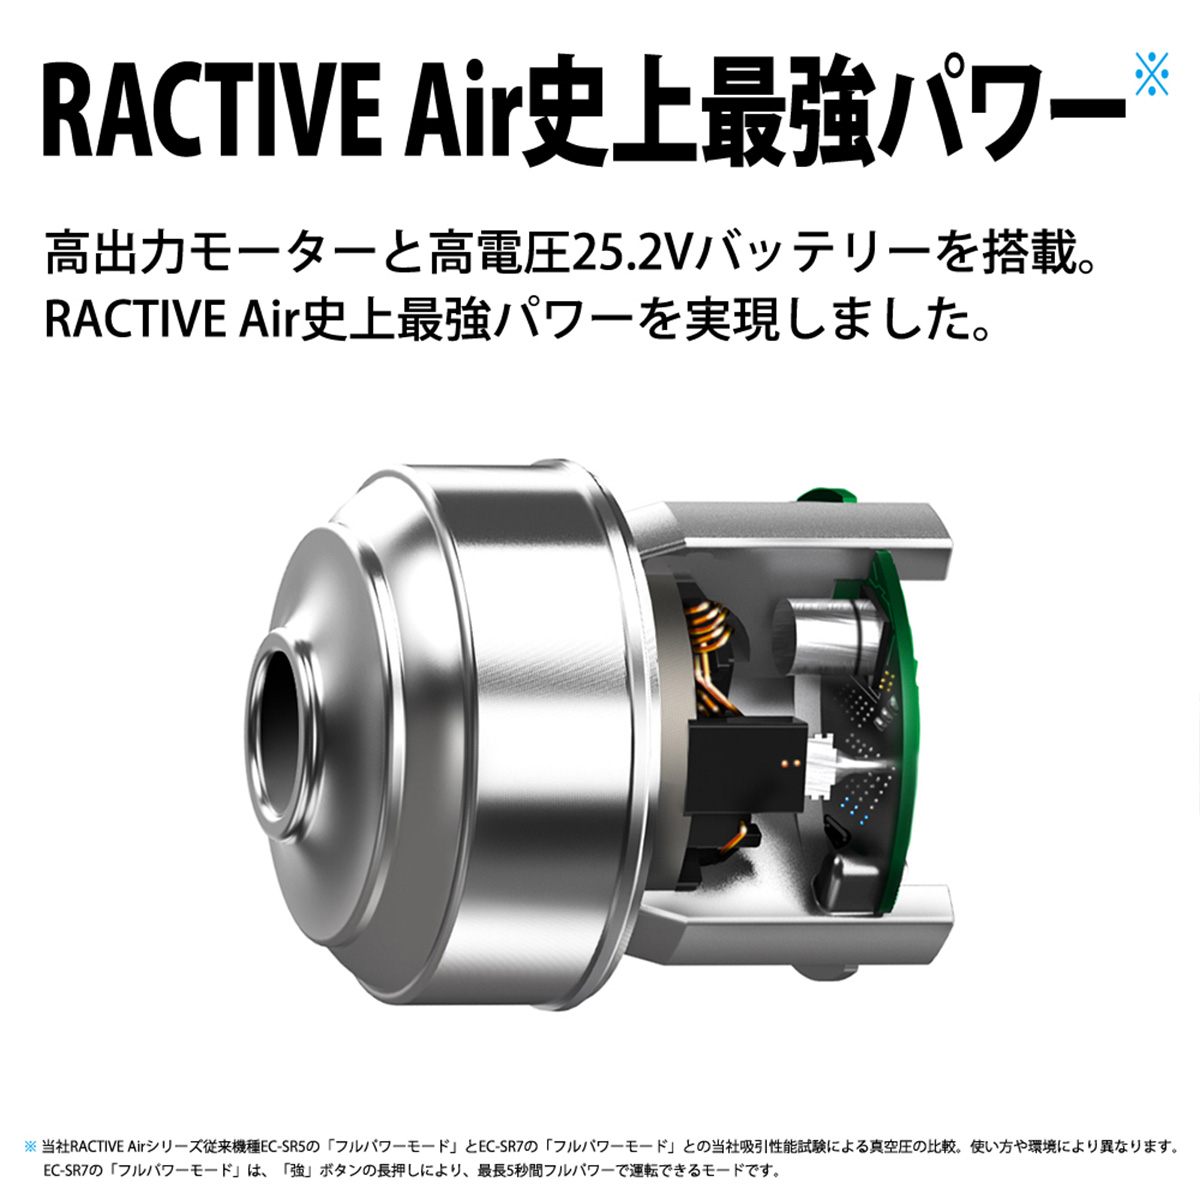 【在庫限り】シャープ コードレススティッククリーナー サイクロン式 RACTIVE Air ピンク系